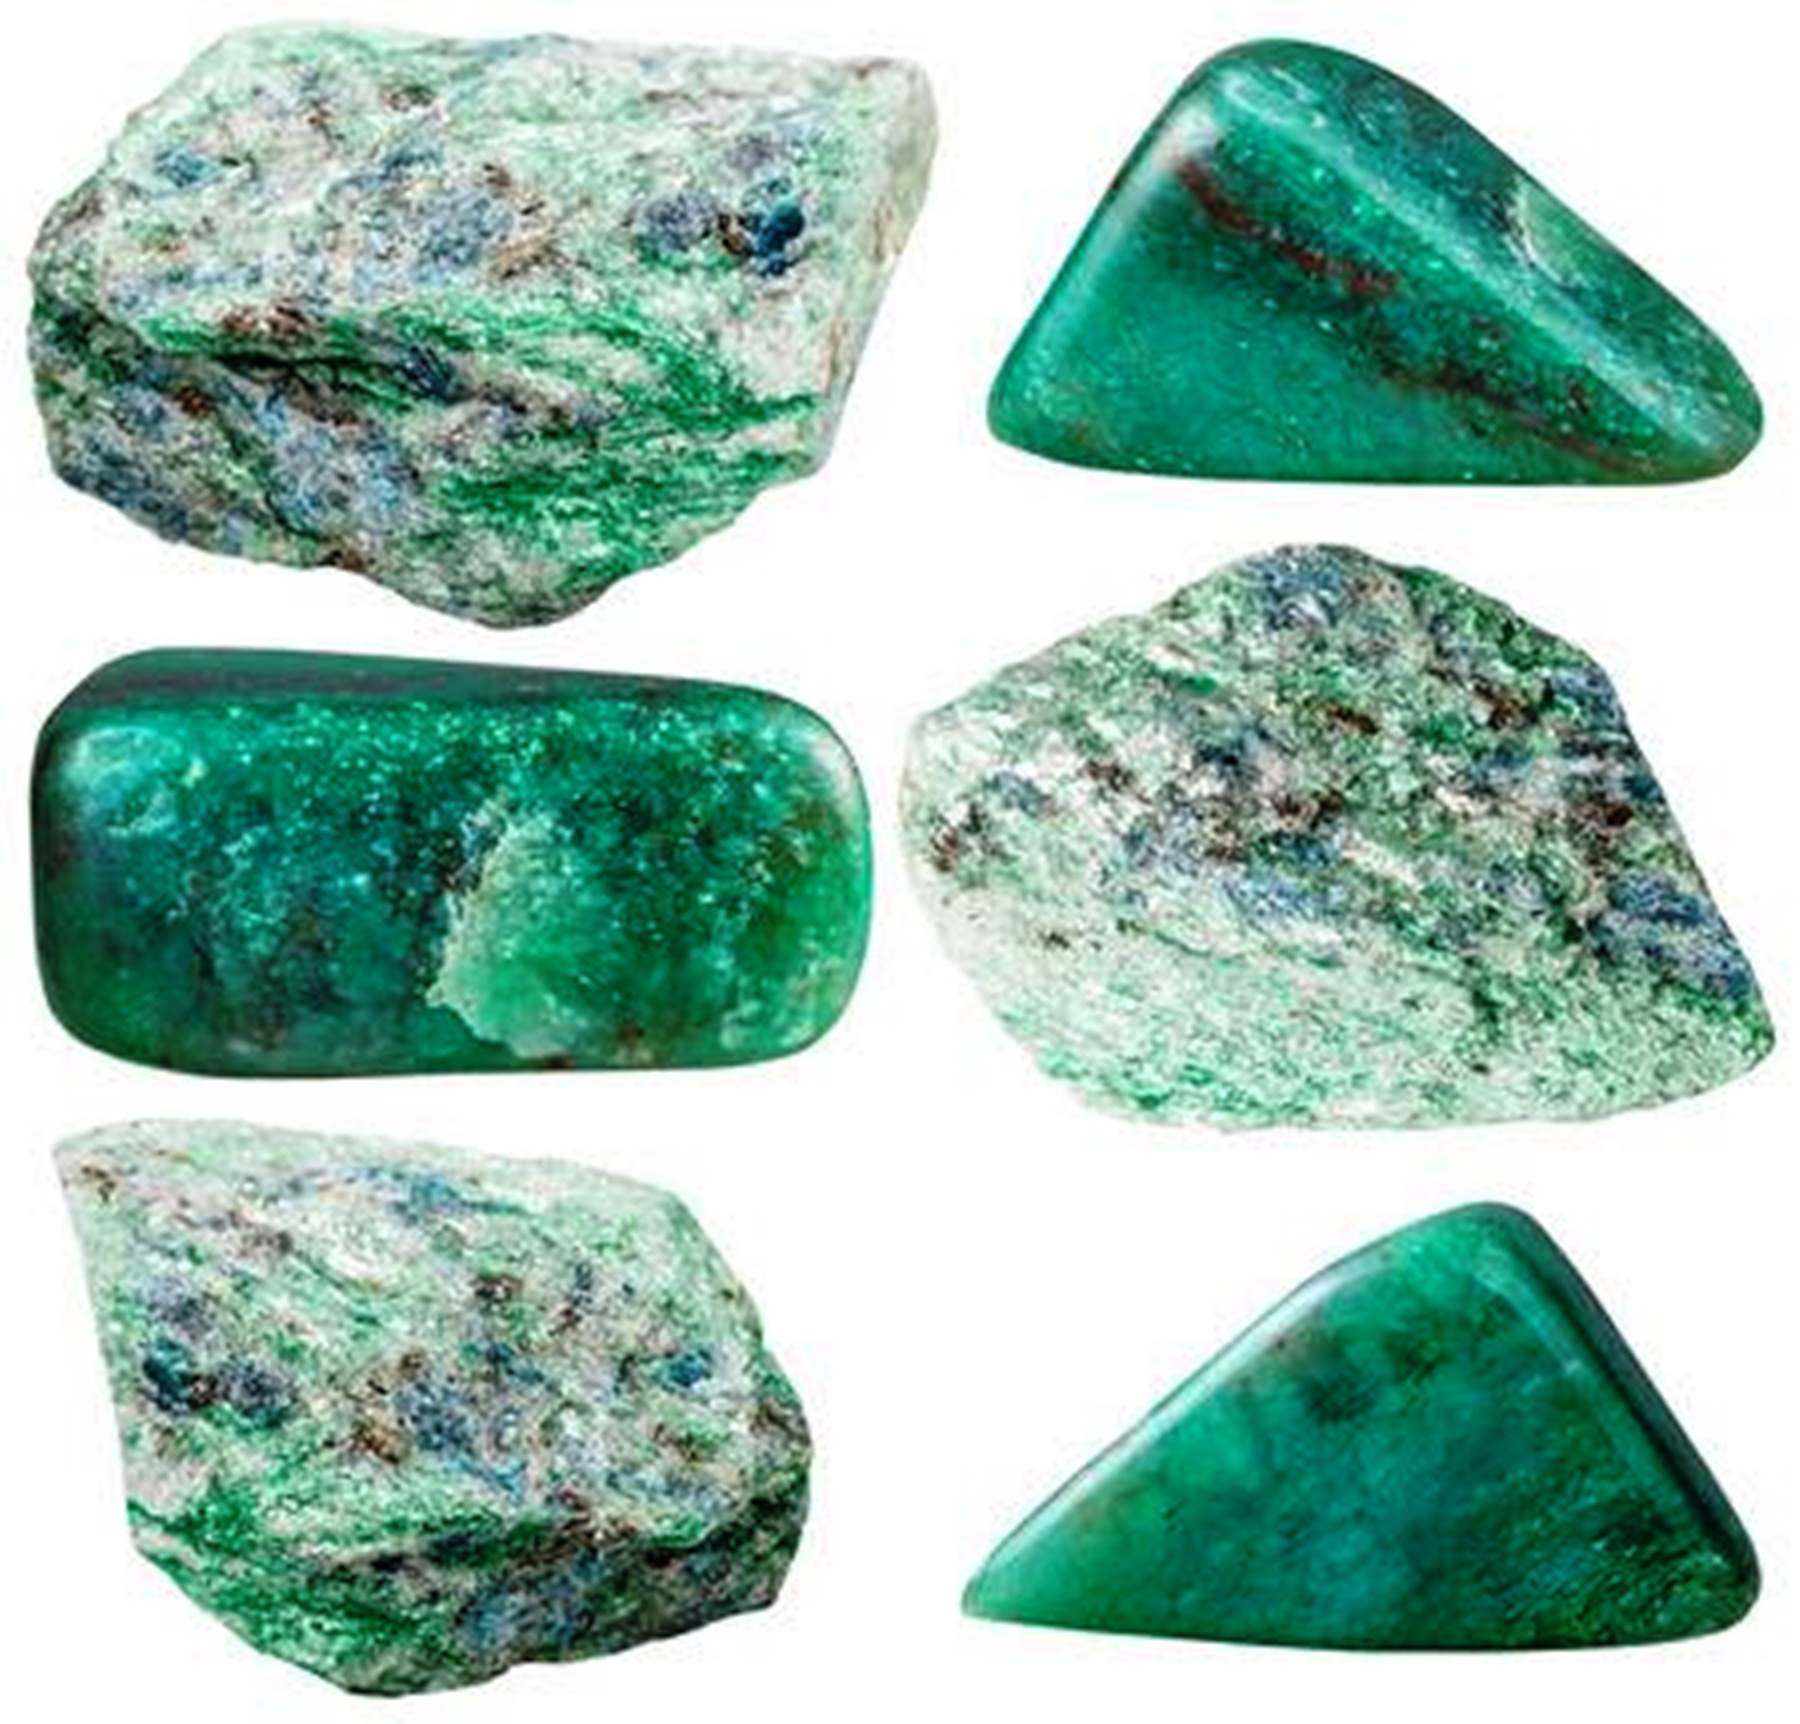 полудрагоценные камни зеленого цвета фото